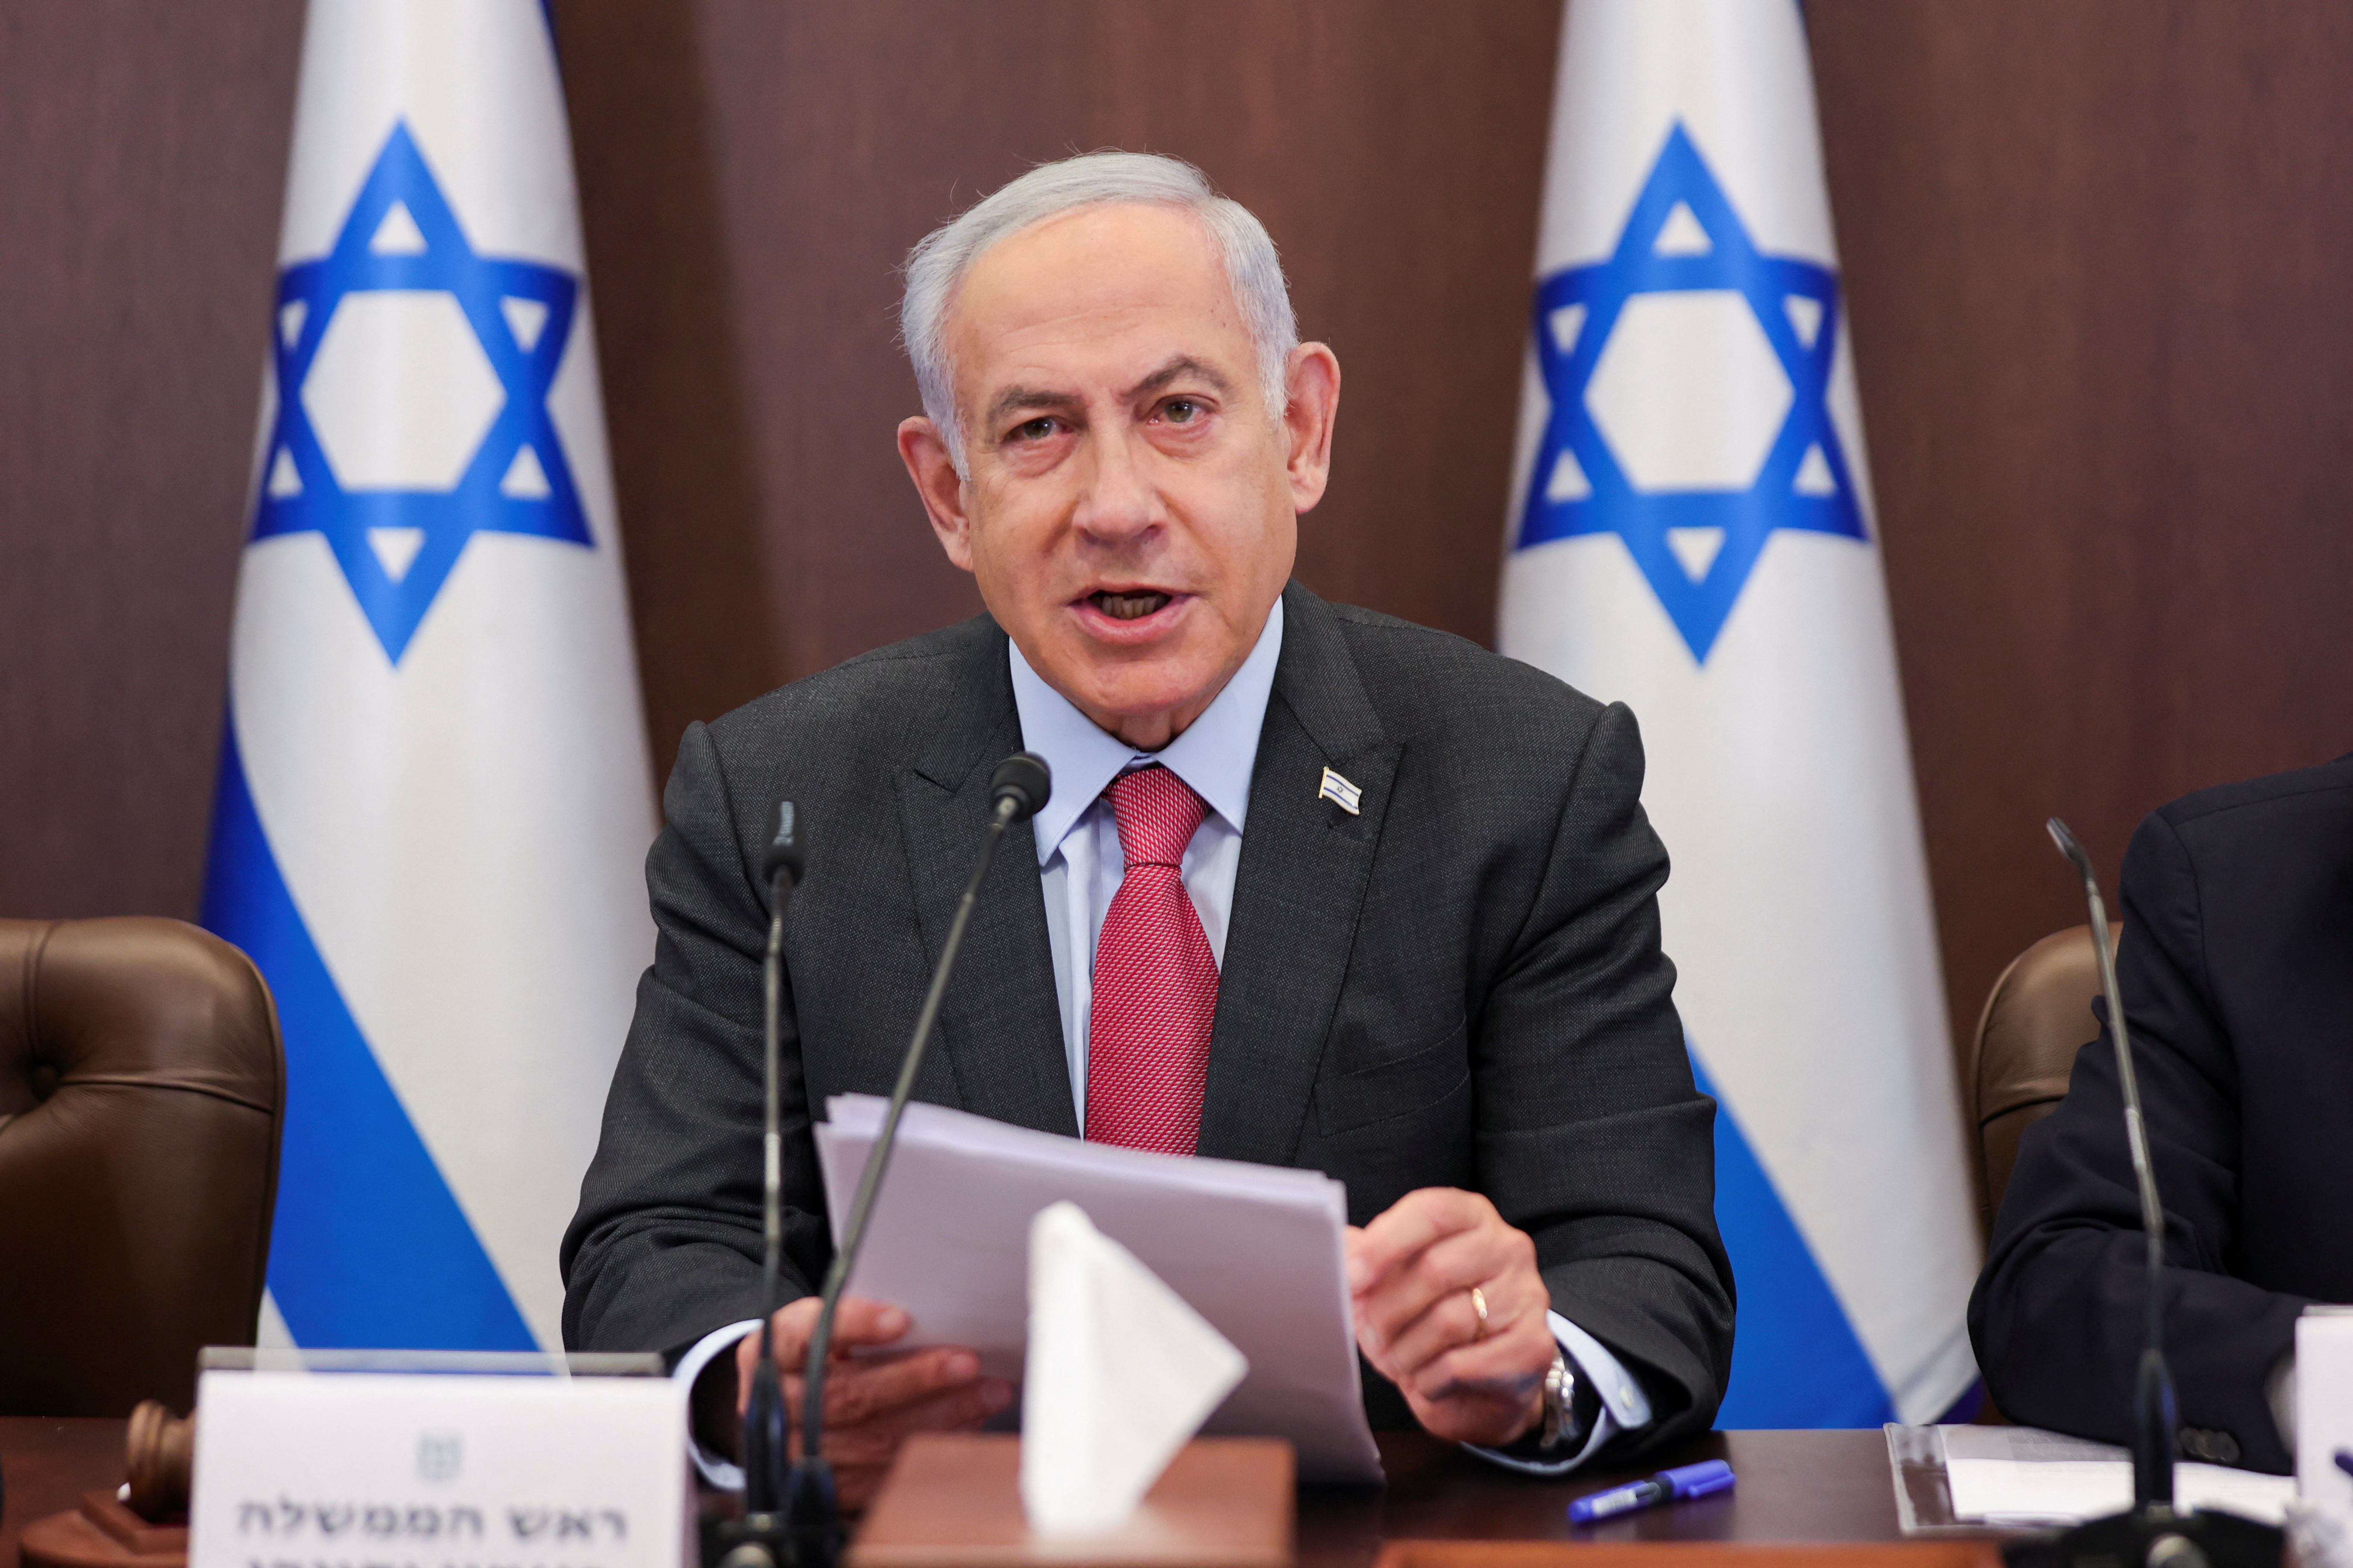 Israel weekly cabinet meeting in Jerusalem